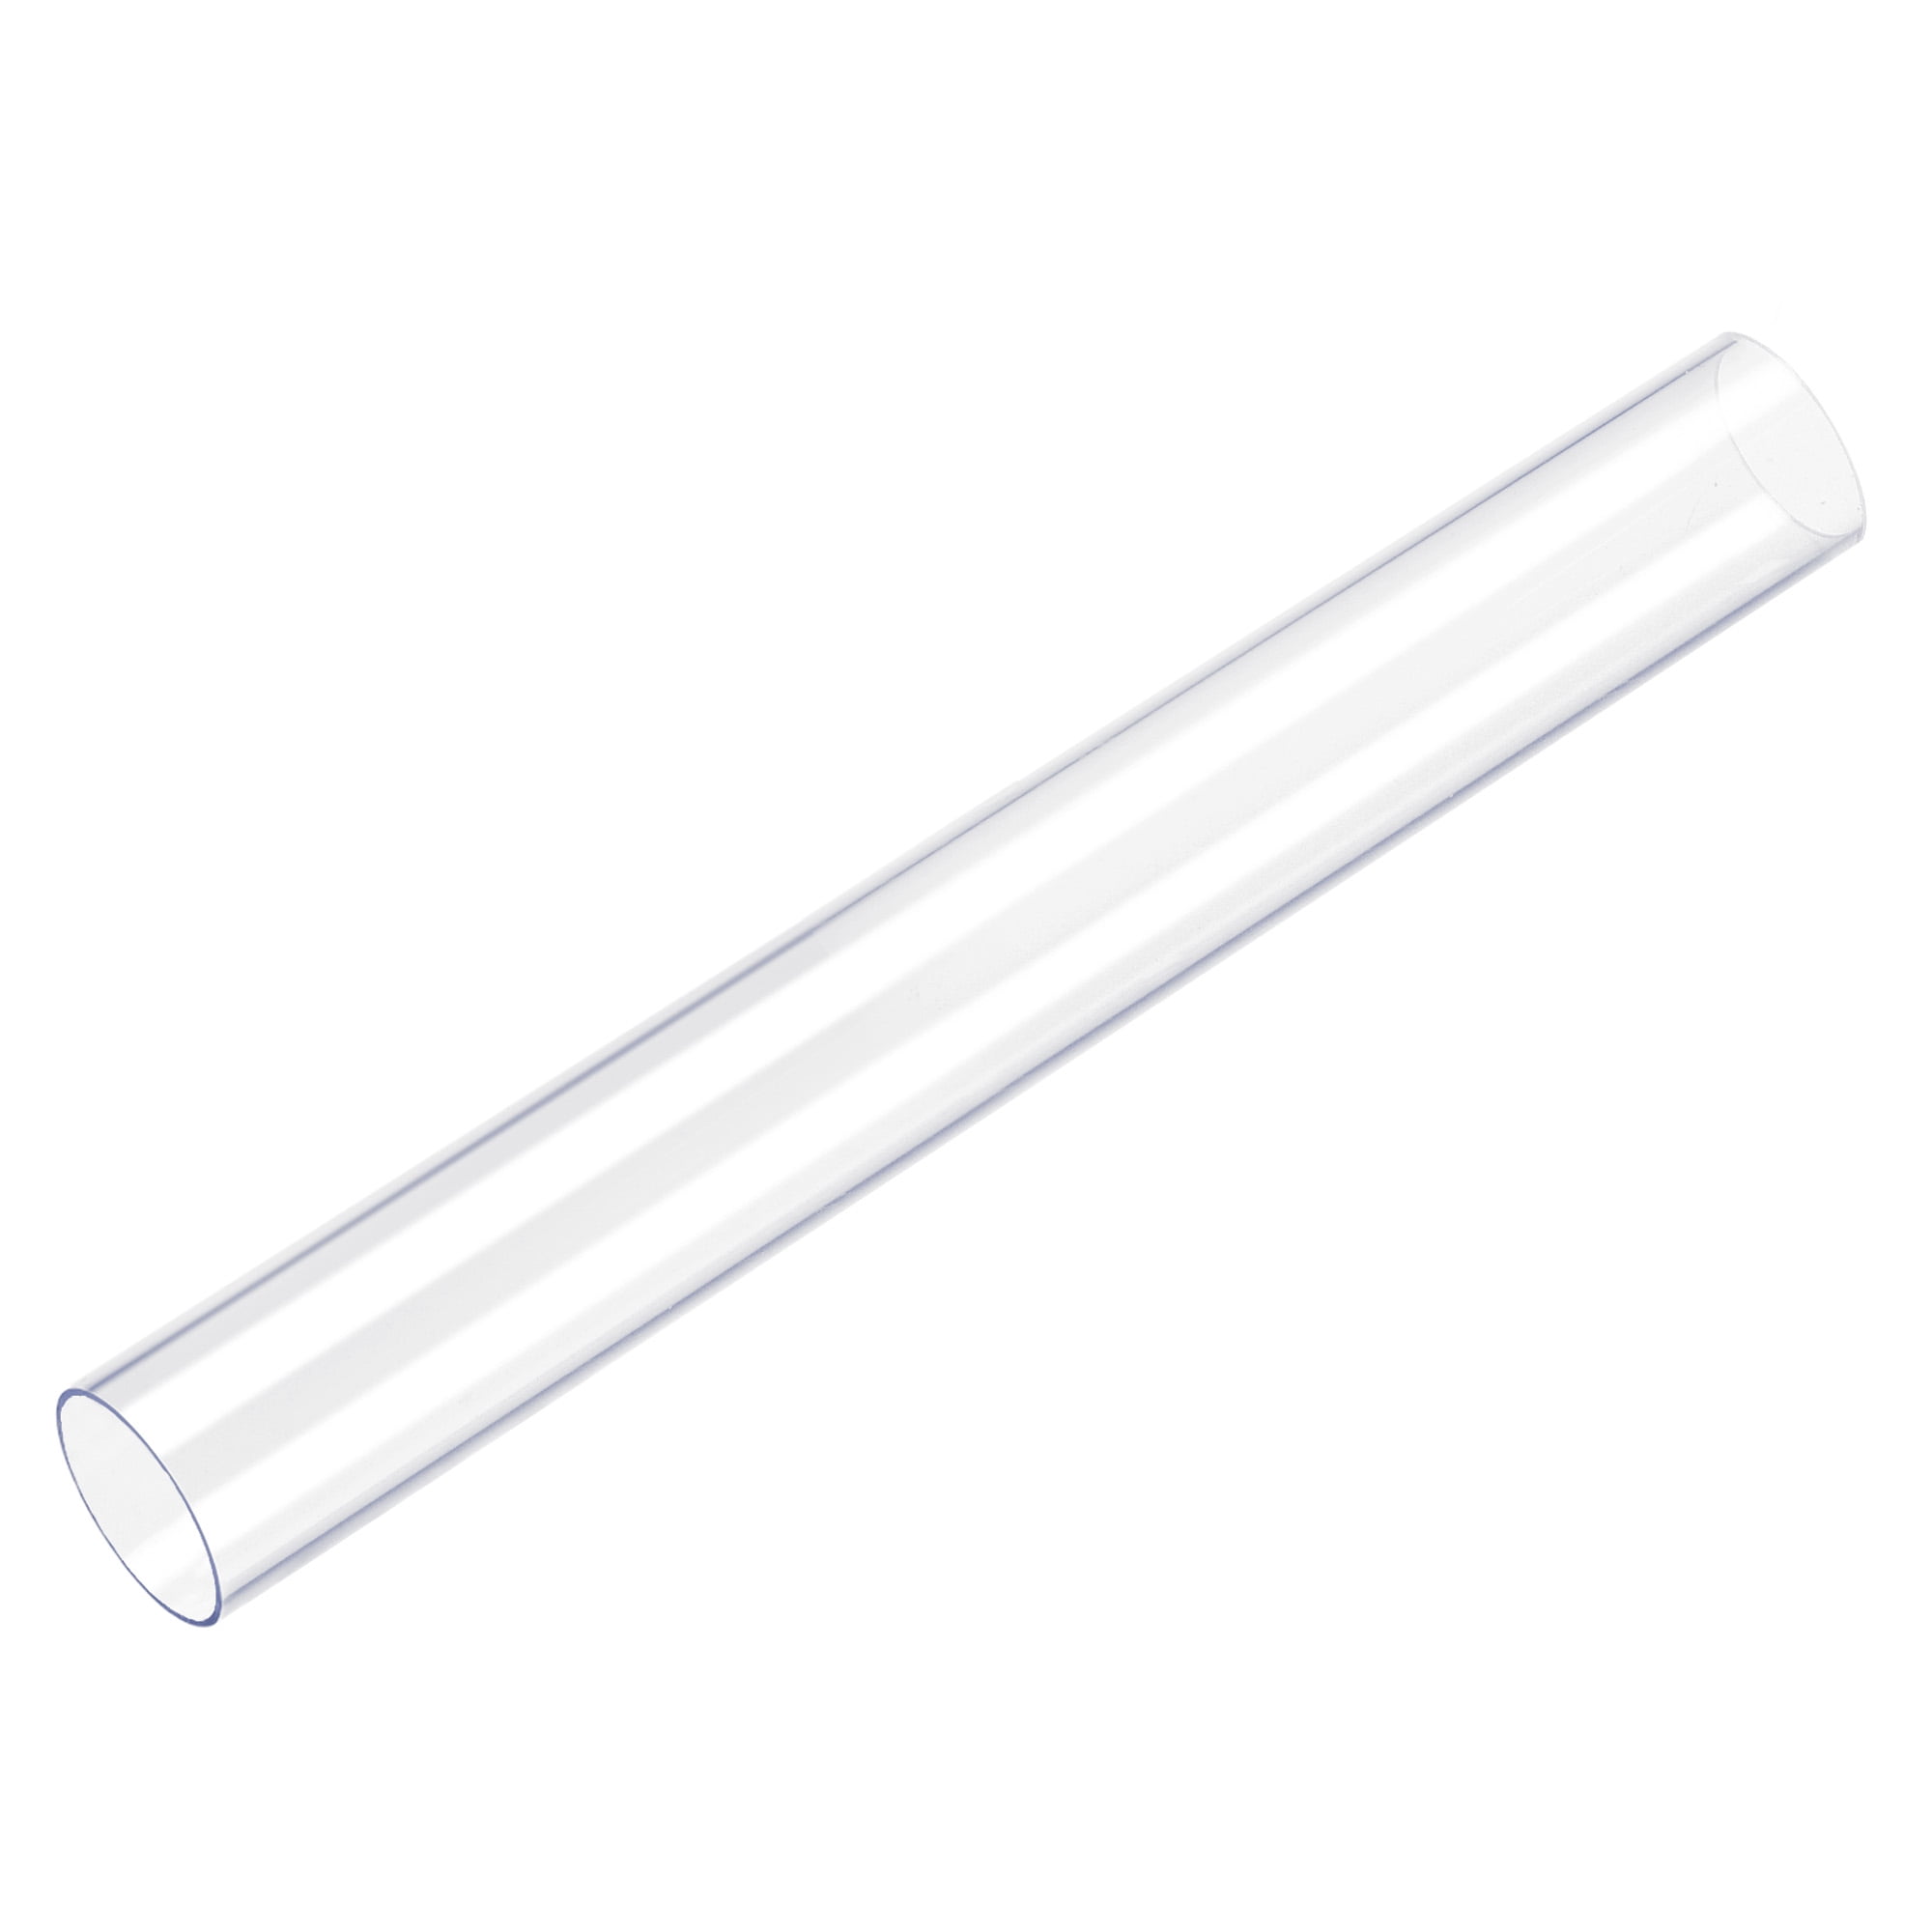 PVC Rigide Rond Tube Transparent 23mm IDx25mm OD,0.5m/1.64ft Longueur 2Pcs  